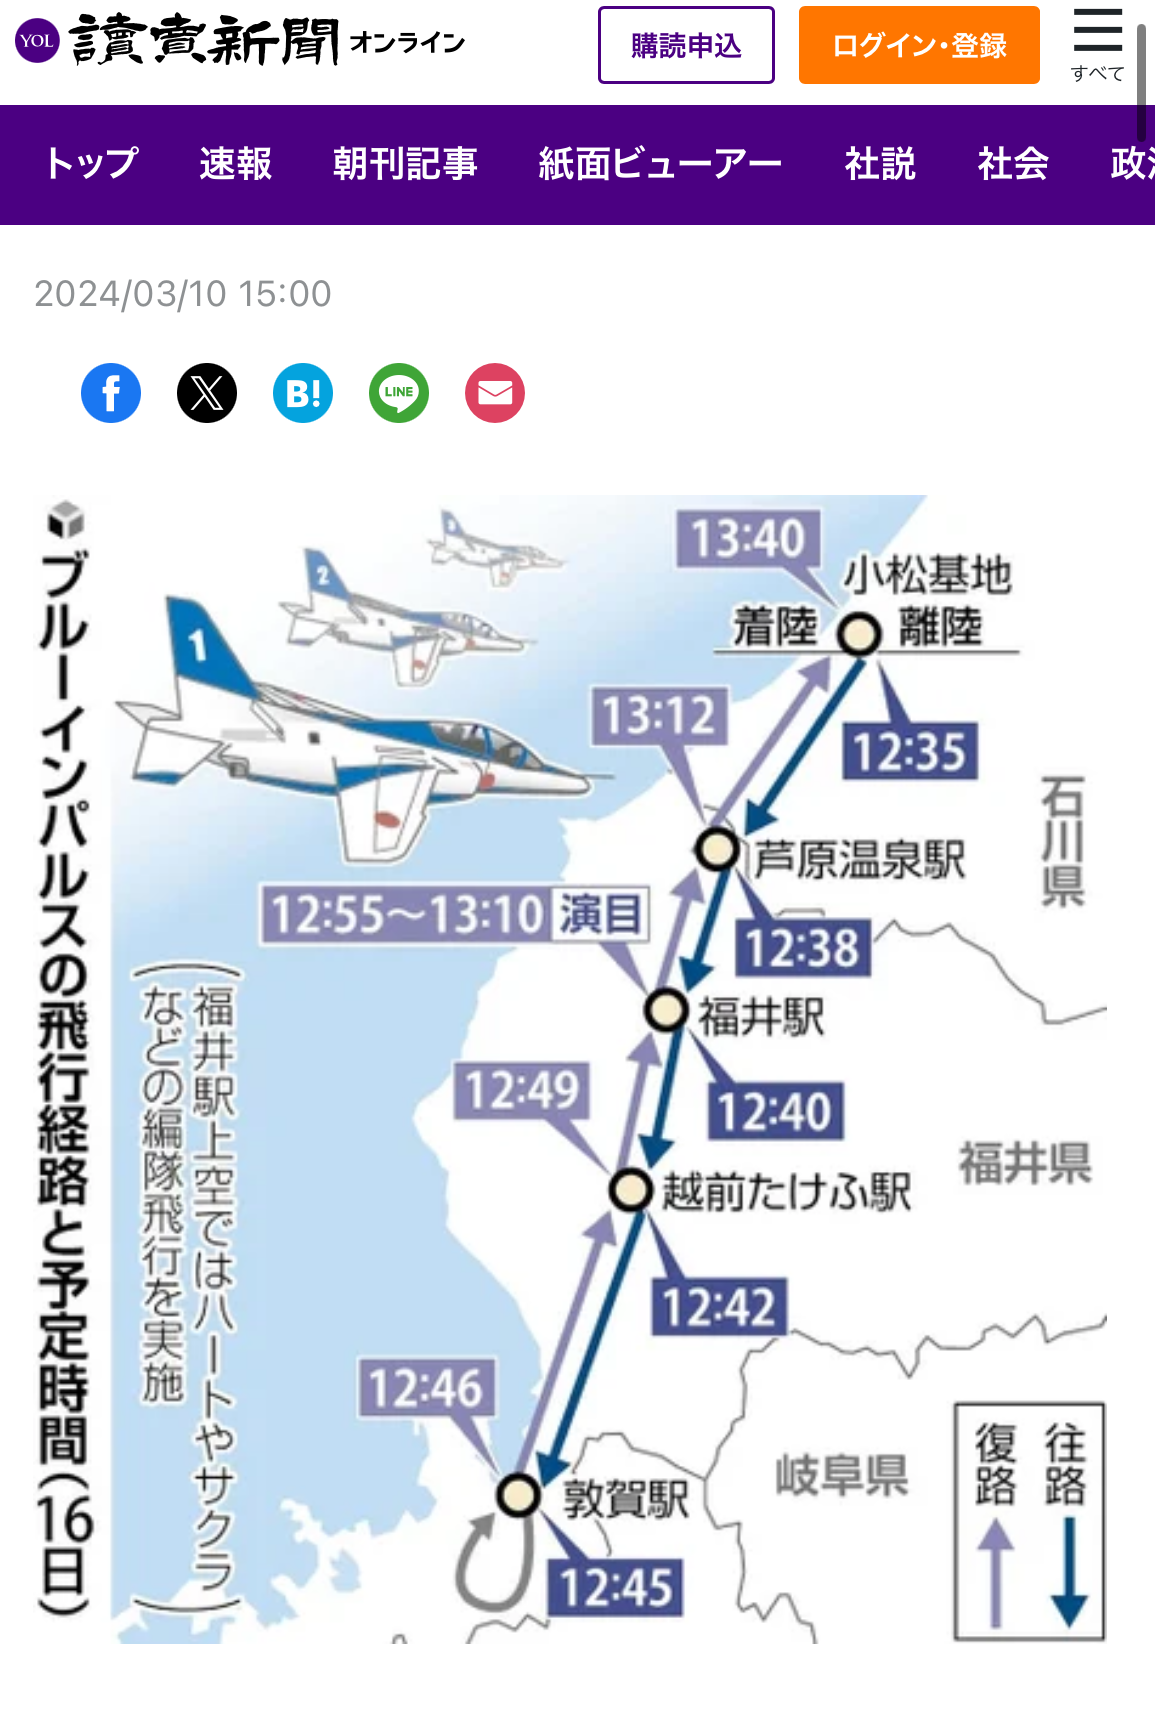 いよいよ北陸新幹線が金沢駅から敦賀まで開通します!!! ミヤザキトーヨー住器のブログ 写真1